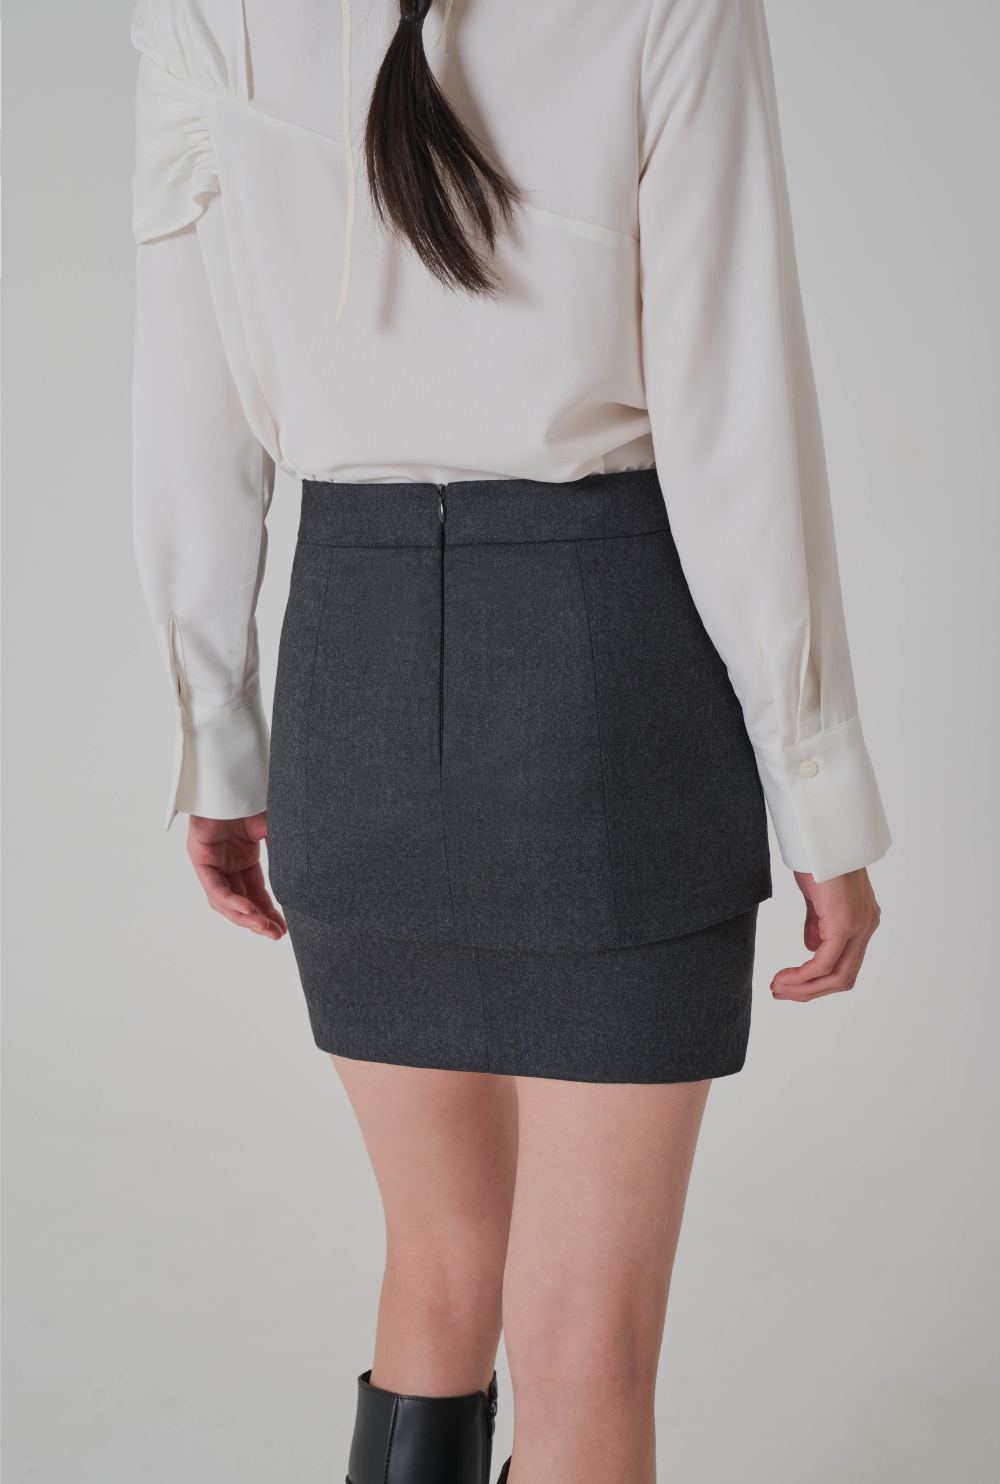 mini skirt detail image-S3L7